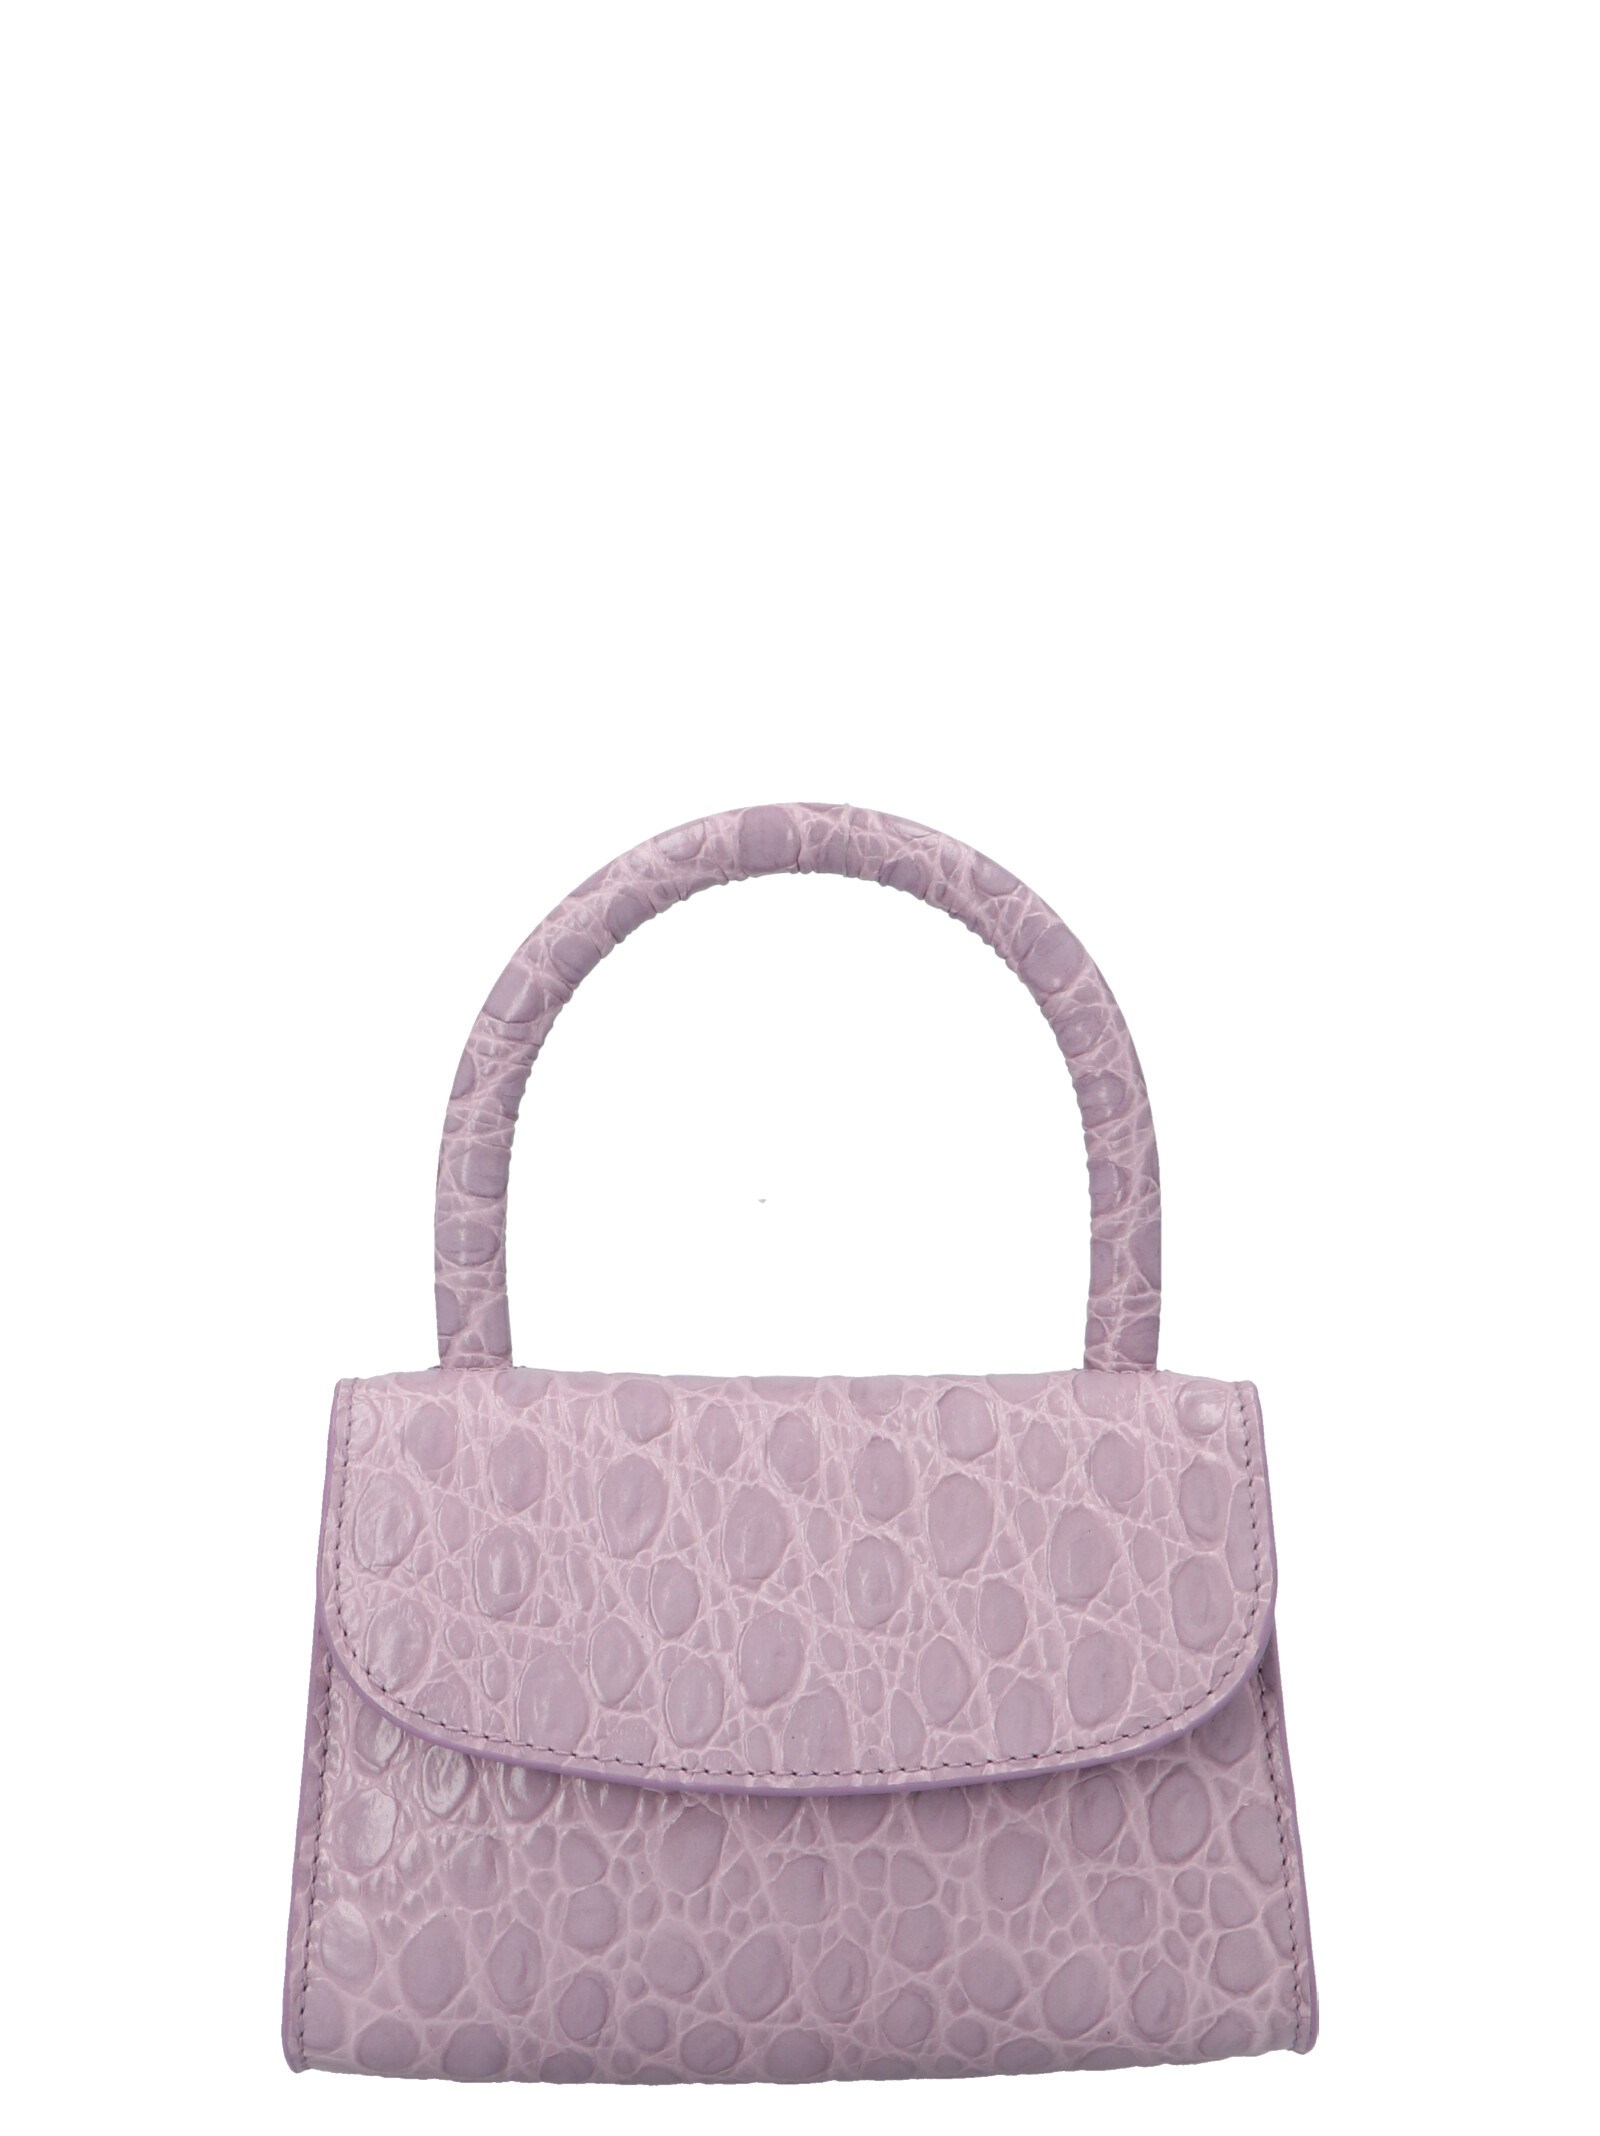 'Mini' handbag